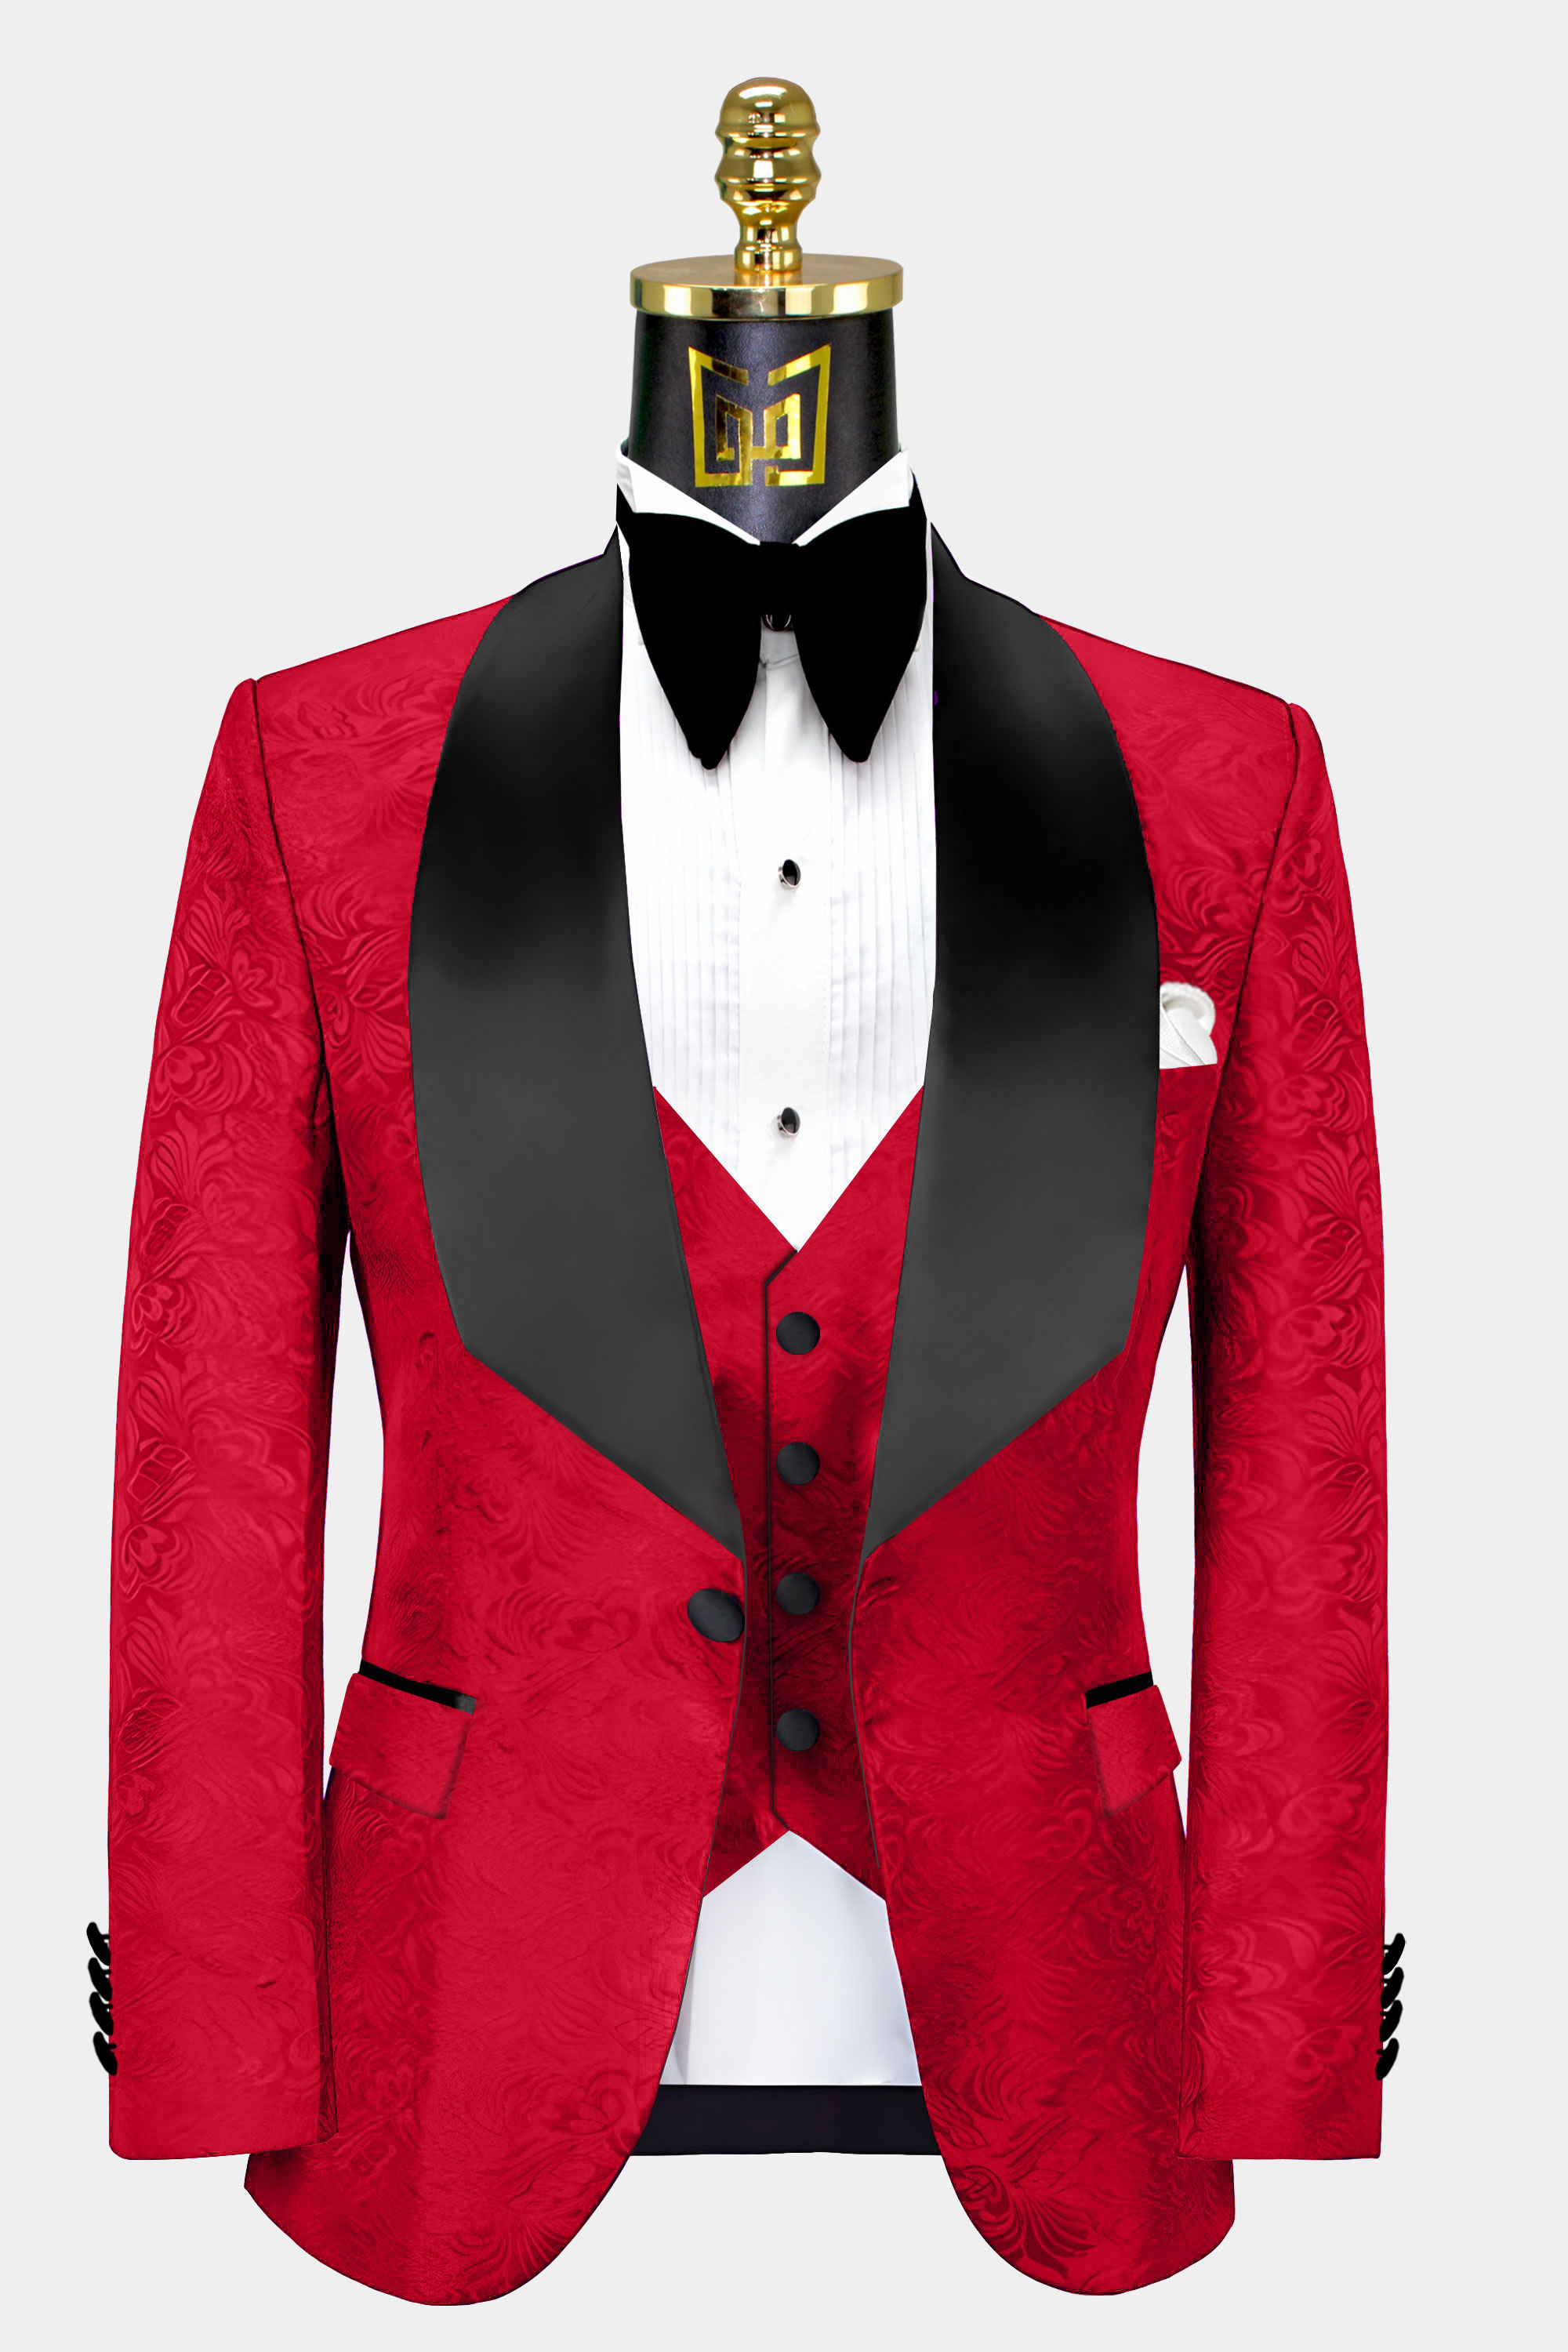 Red-and-Black-Tuxedo-Jacket-from-Gentlemansguru.com